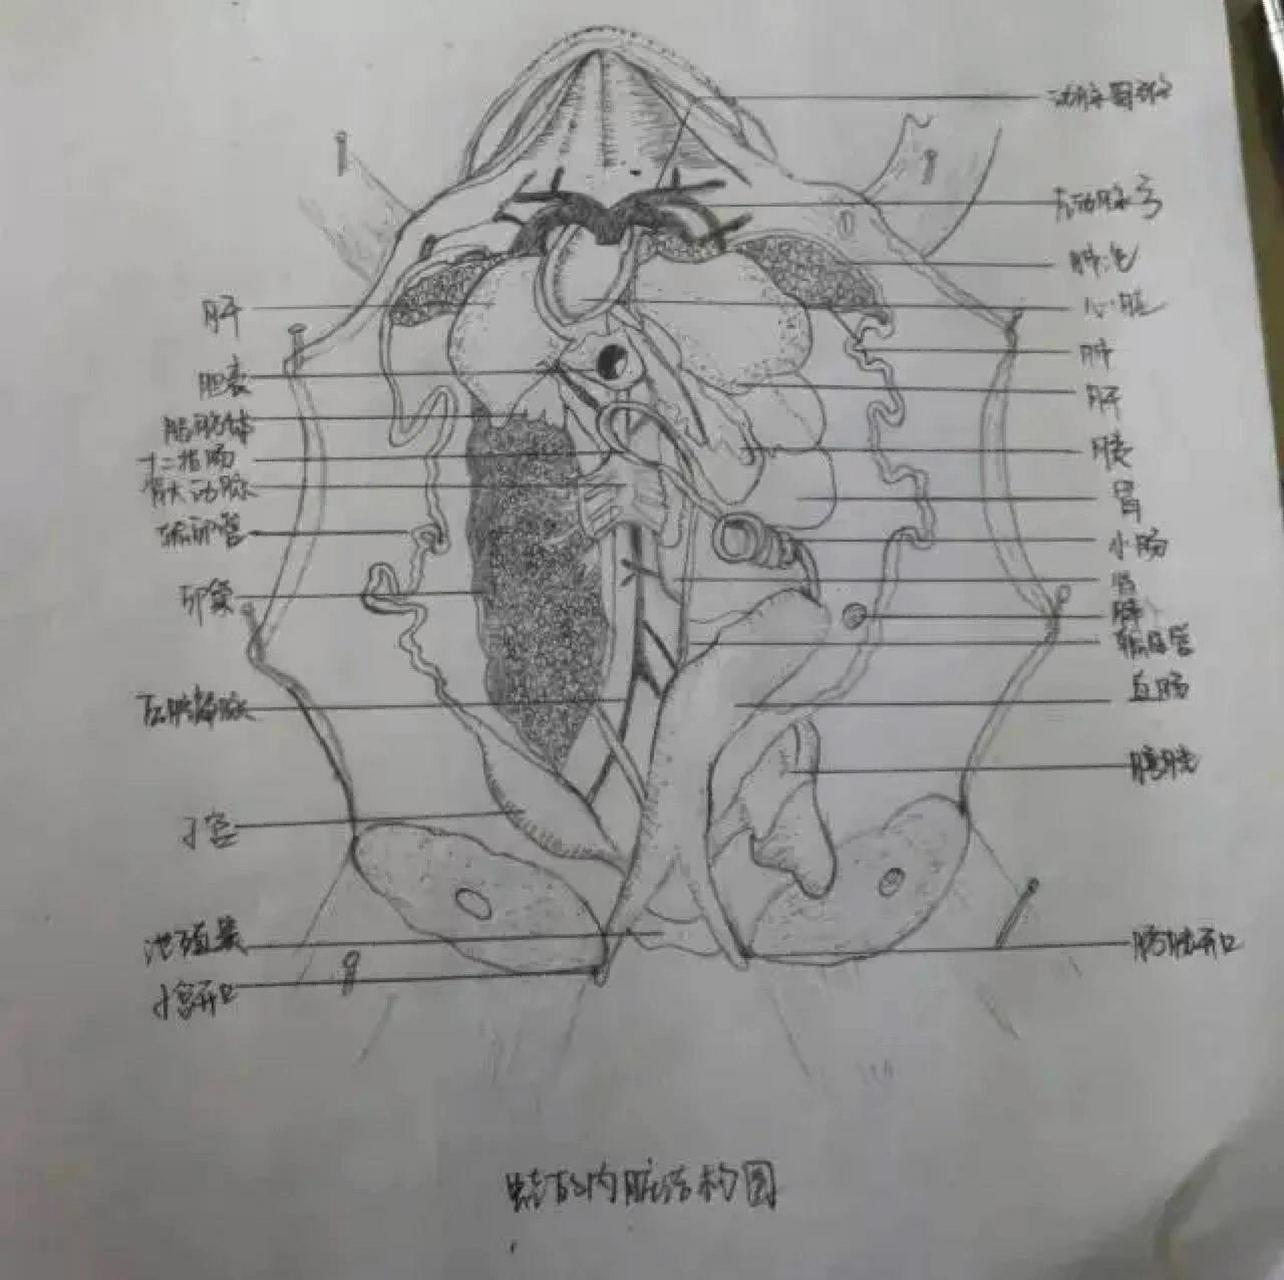 牛蛙的内部解剖结构图图片